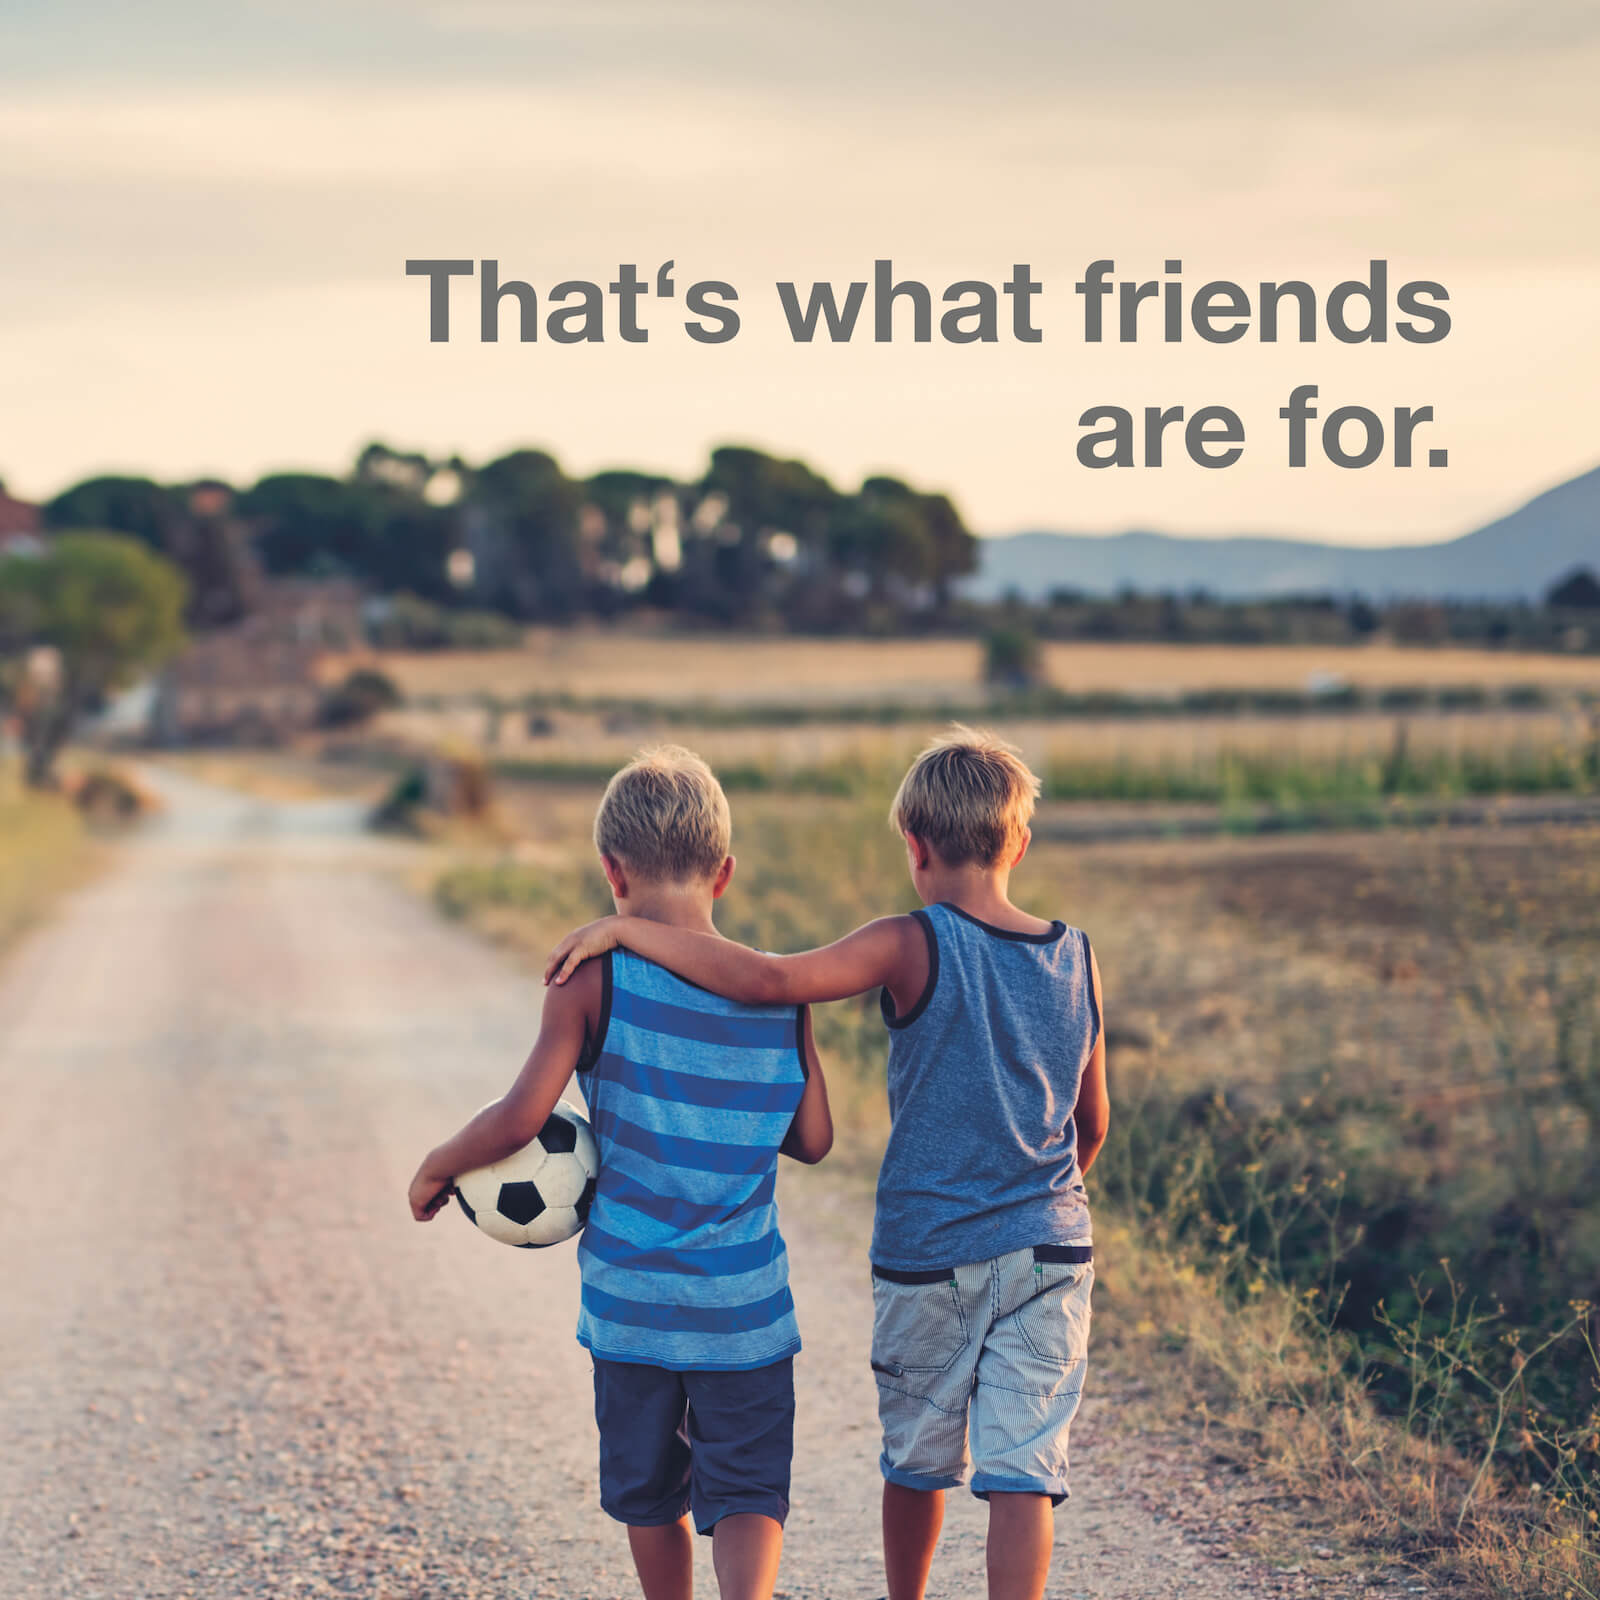 Über Freundschaft und Wertschätzung in der Kindheit. N4YK – wir haben immer das ganz große Familienglück im Blick.